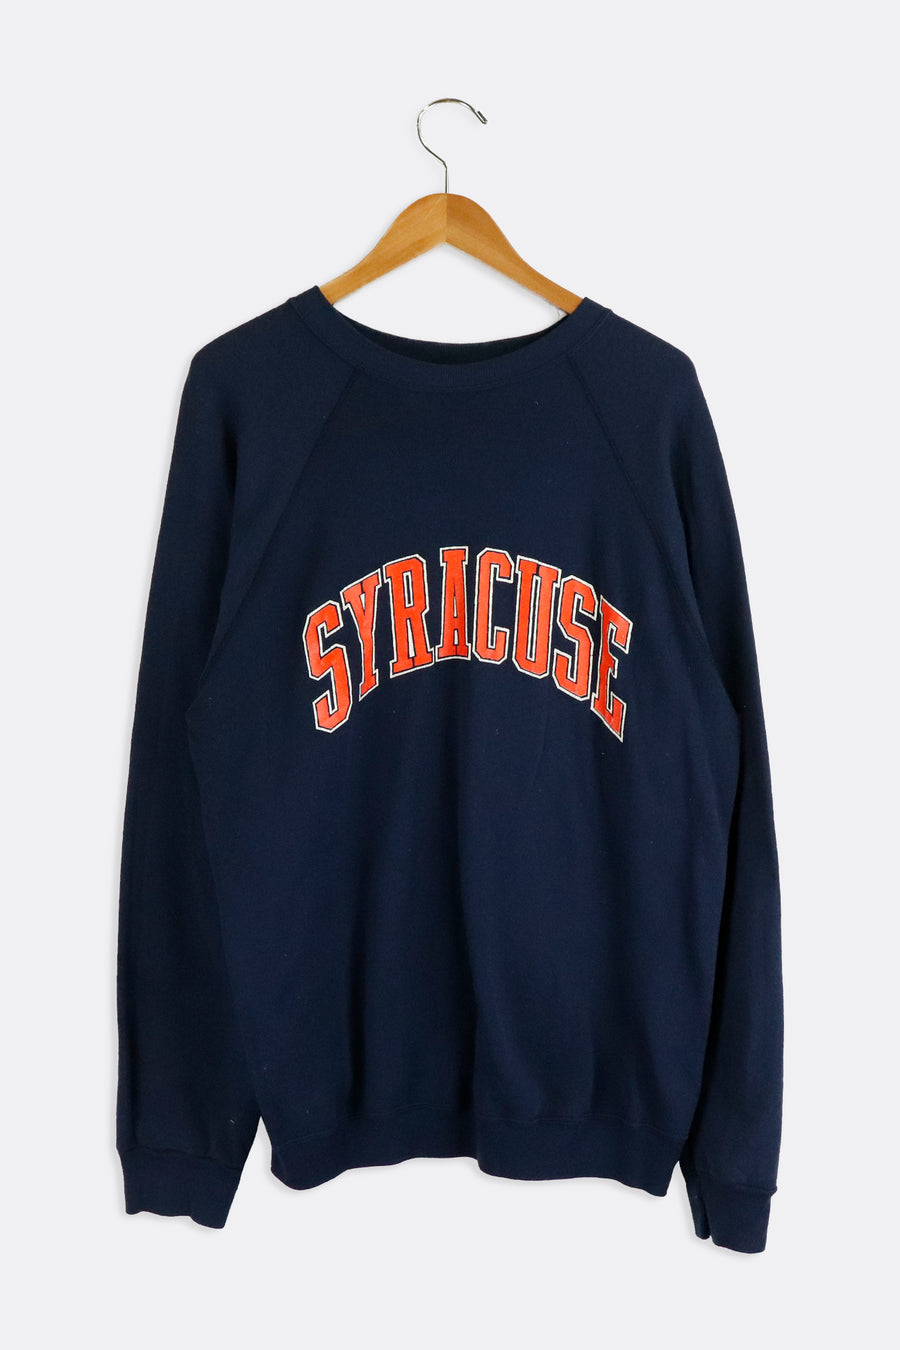 Vintage Syracuse Orange Bold Lettering Vinyl Sweatshirt Sz L